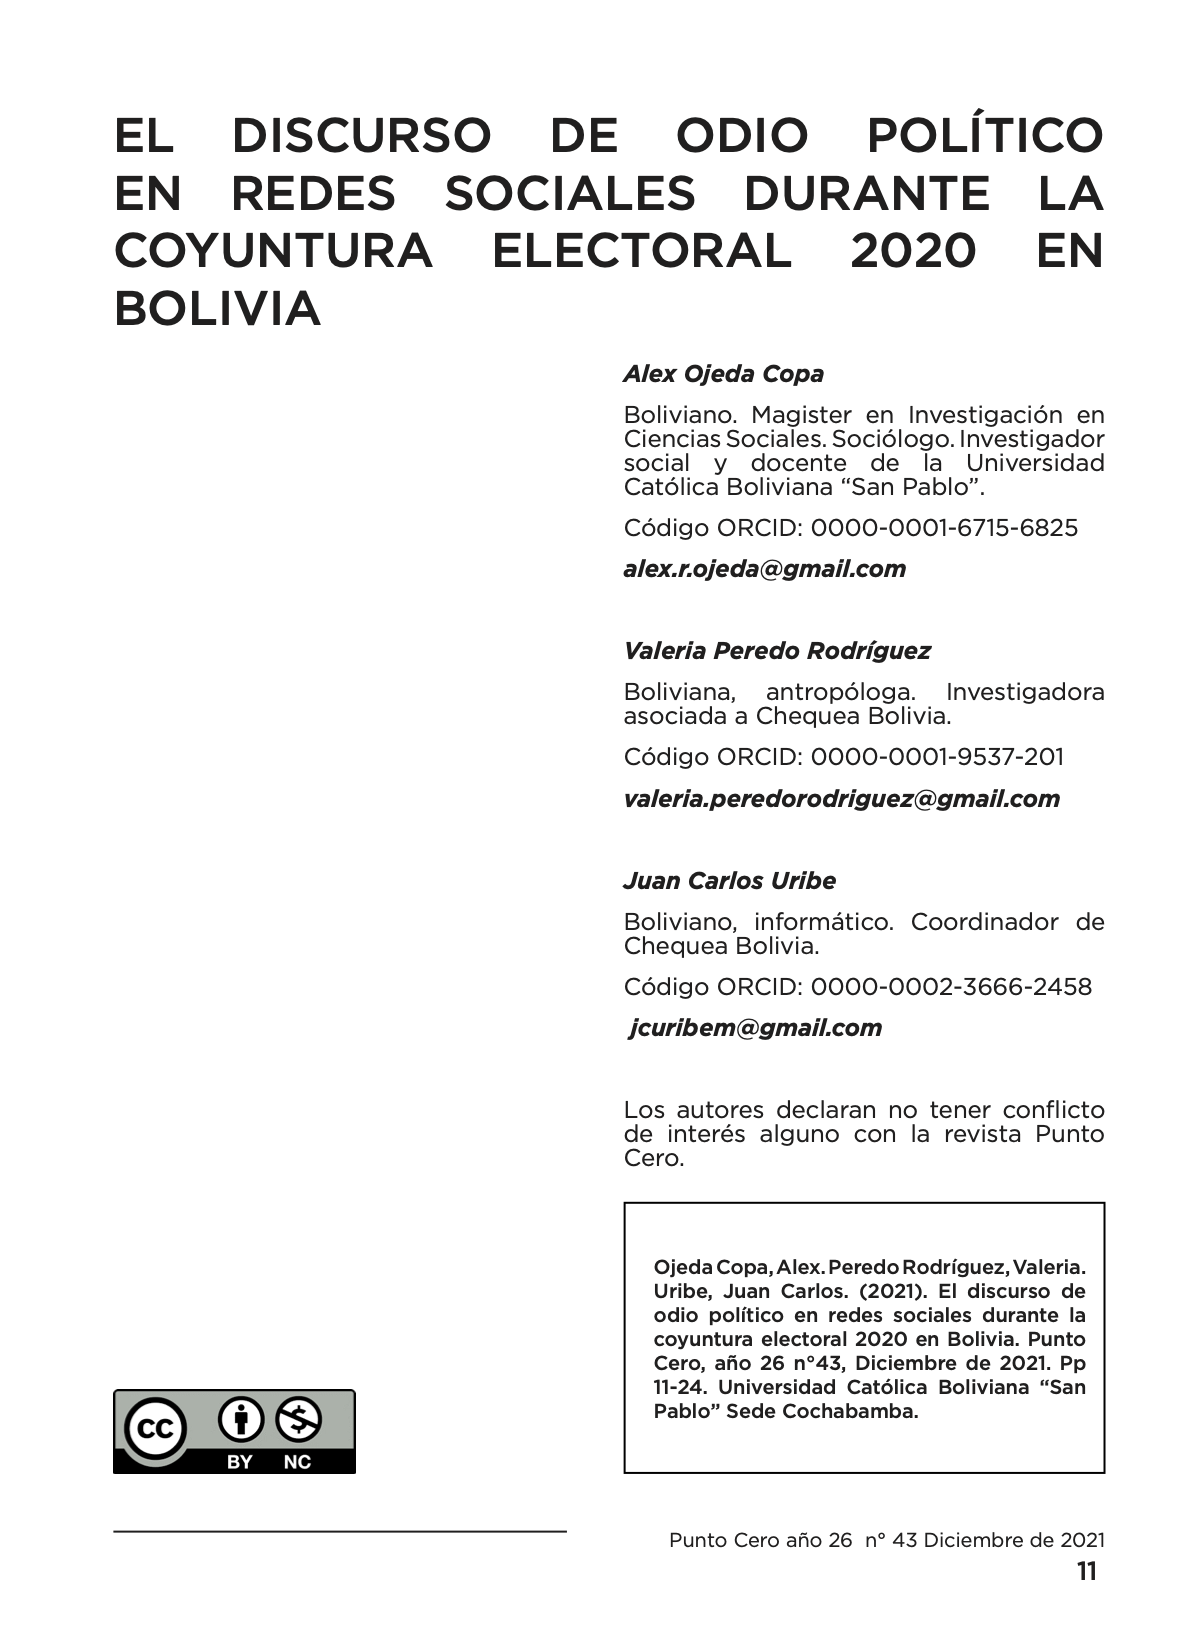 El discurso de odio político en redes sociales durante la coyuntura electoral 2020 en Bolivia